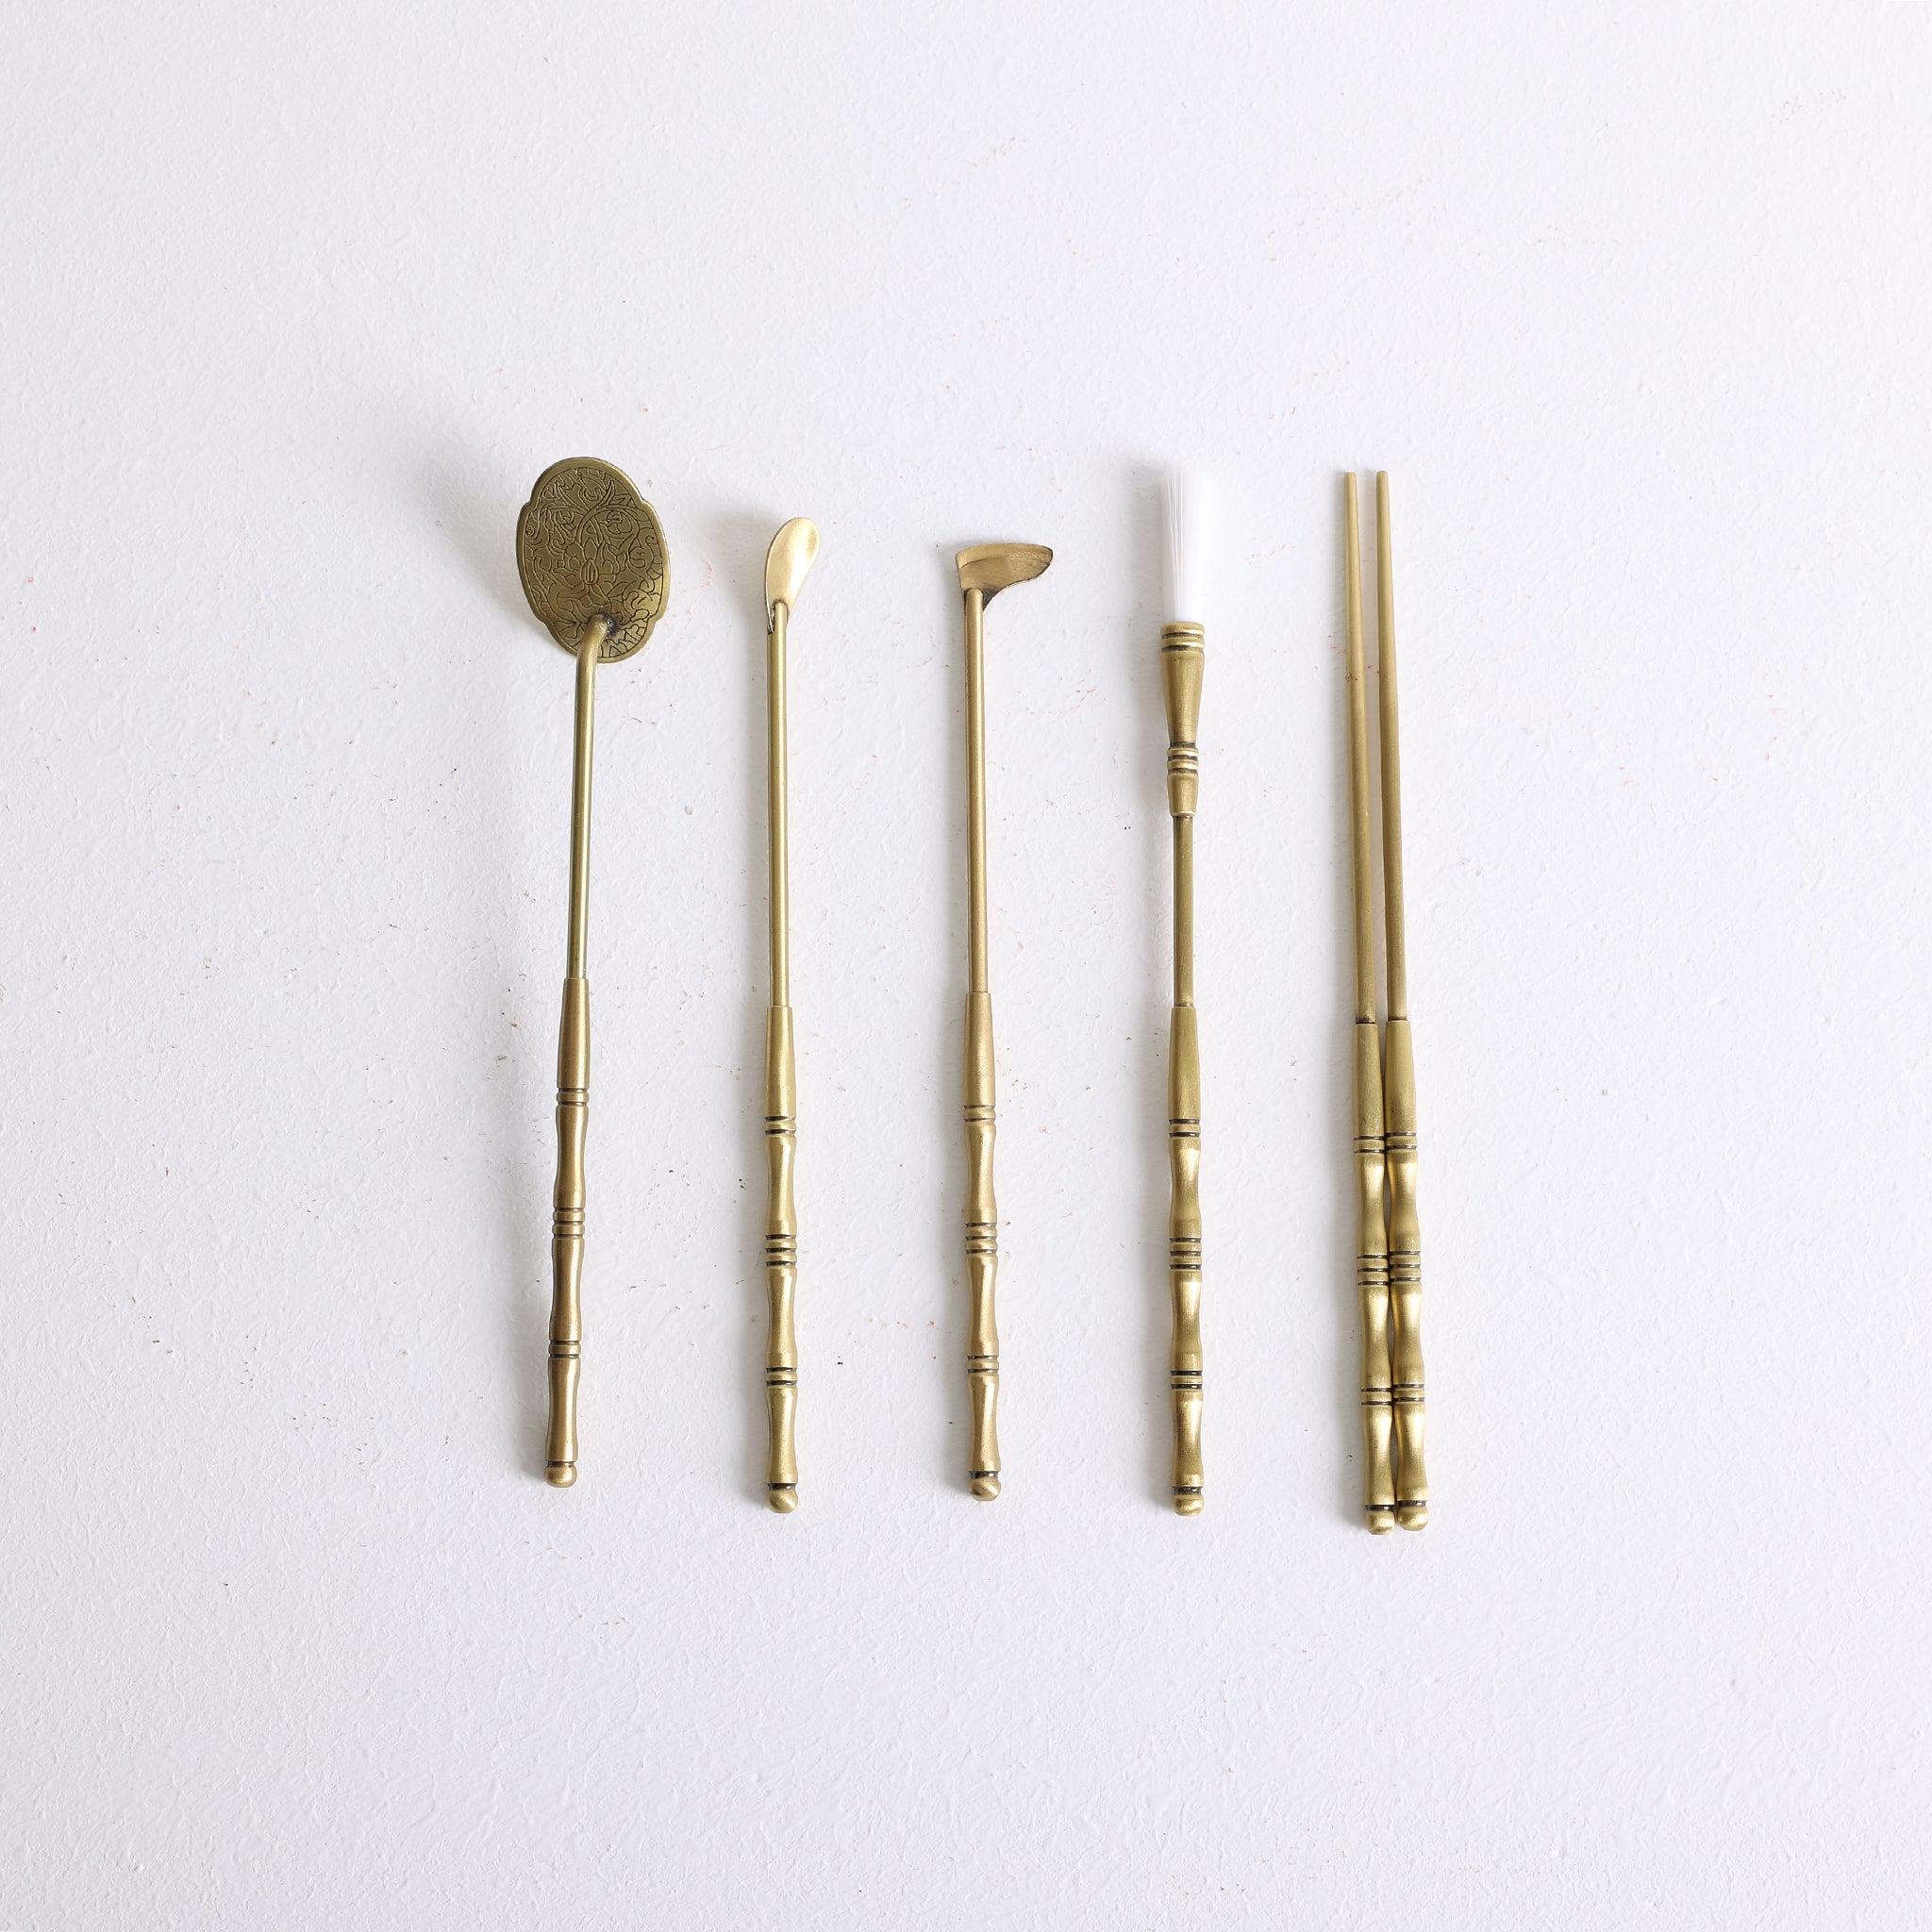 FIVE Vintage Lapel or Stick Pins - See Description